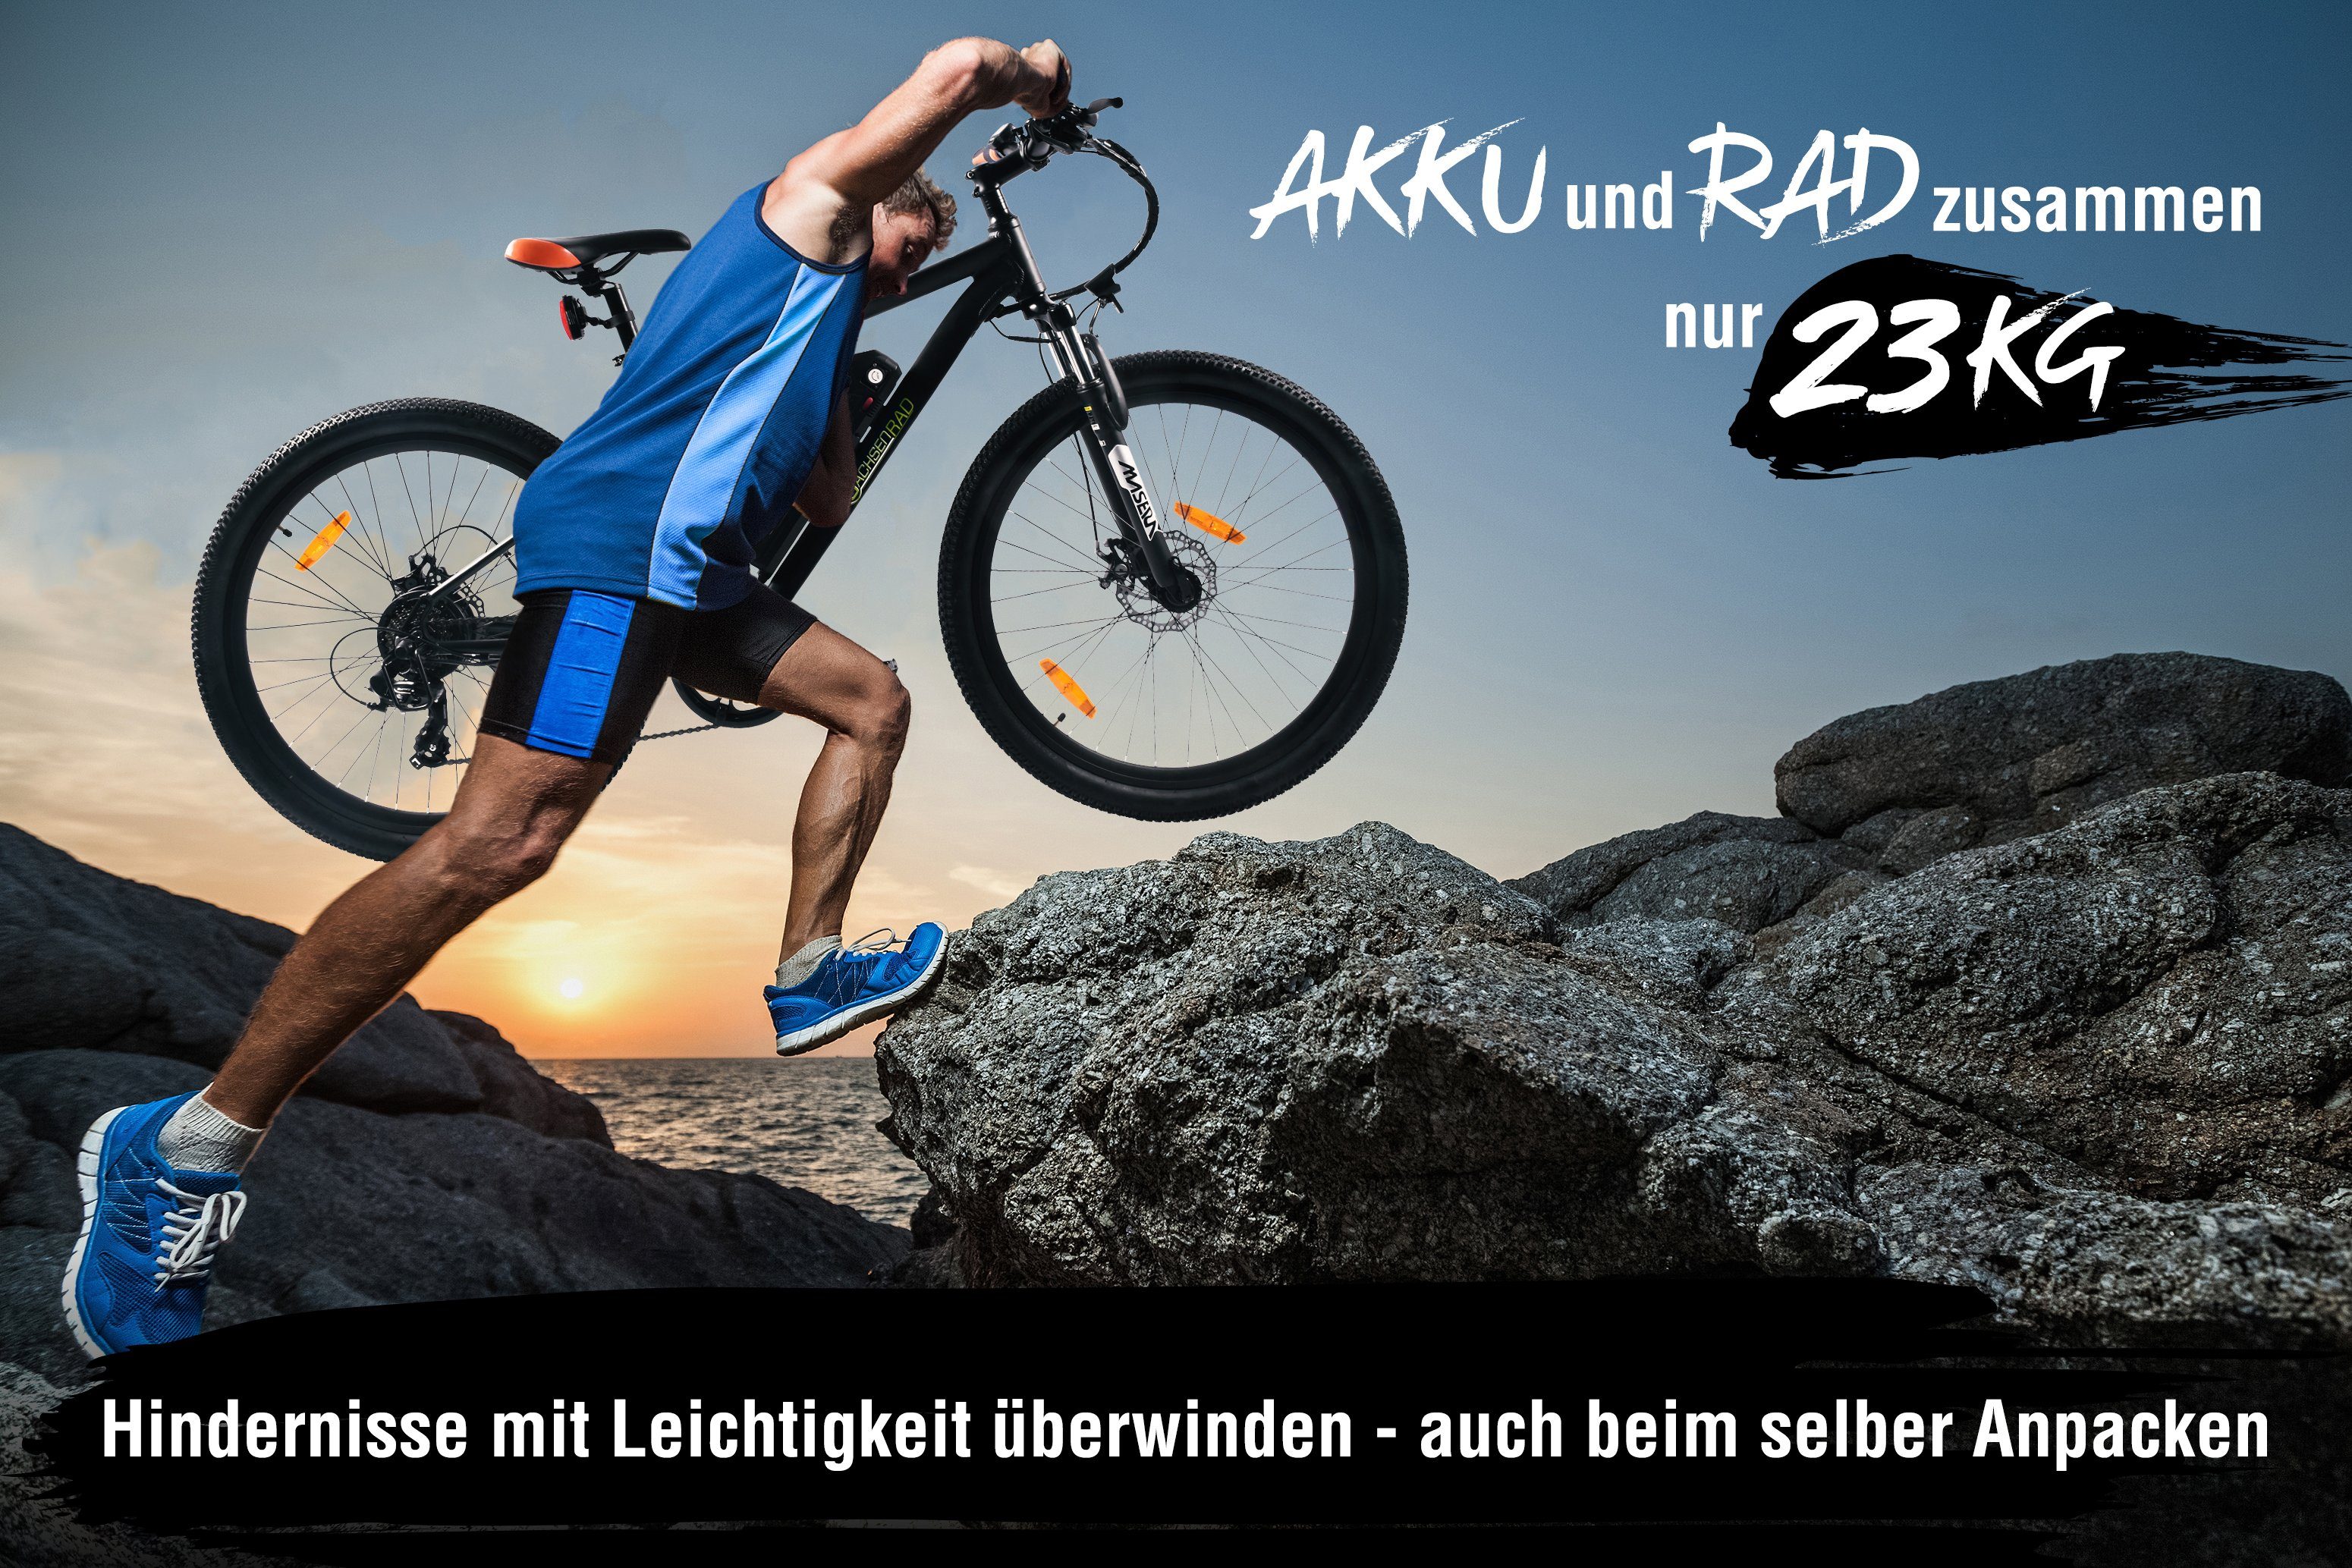 SachsenRAD E-Bike R6 Neo 29 „Excellent Design“ 7 Kettenschaltung, German Gang, Design 2022 Zoll, Product Award